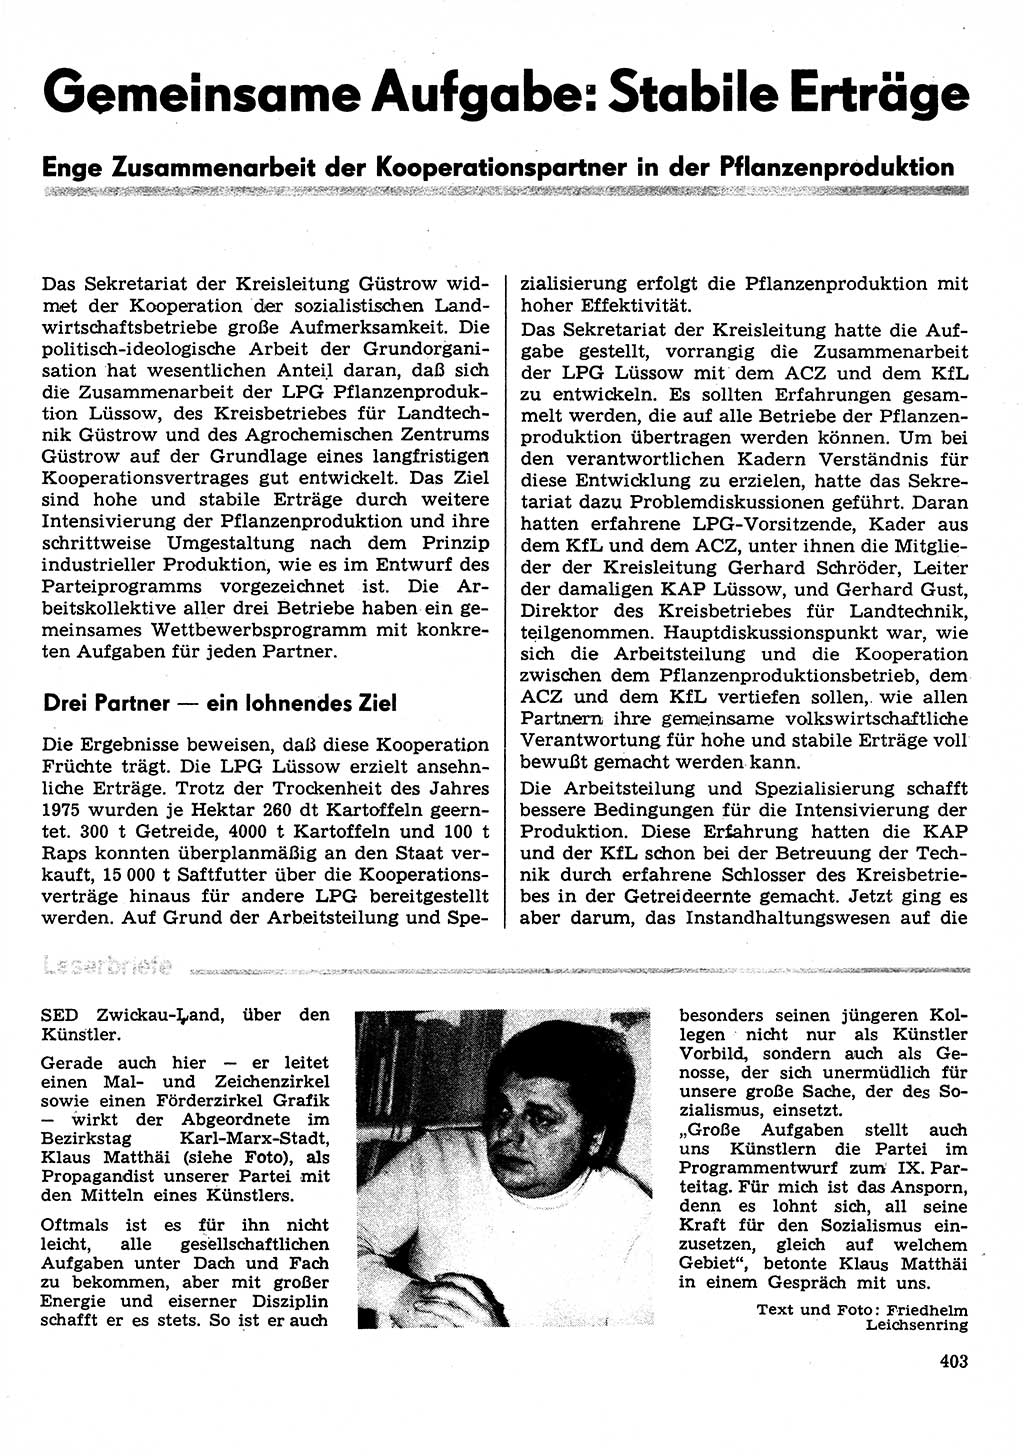 Neuer Weg (NW), Organ des Zentralkomitees (ZK) der SED (Sozialistische Einheitspartei Deutschlands) für Fragen des Parteilebens, 31. Jahrgang [Deutsche Demokratische Republik (DDR)] 1976, Seite 403 (NW ZK SED DDR 1976, S. 403)